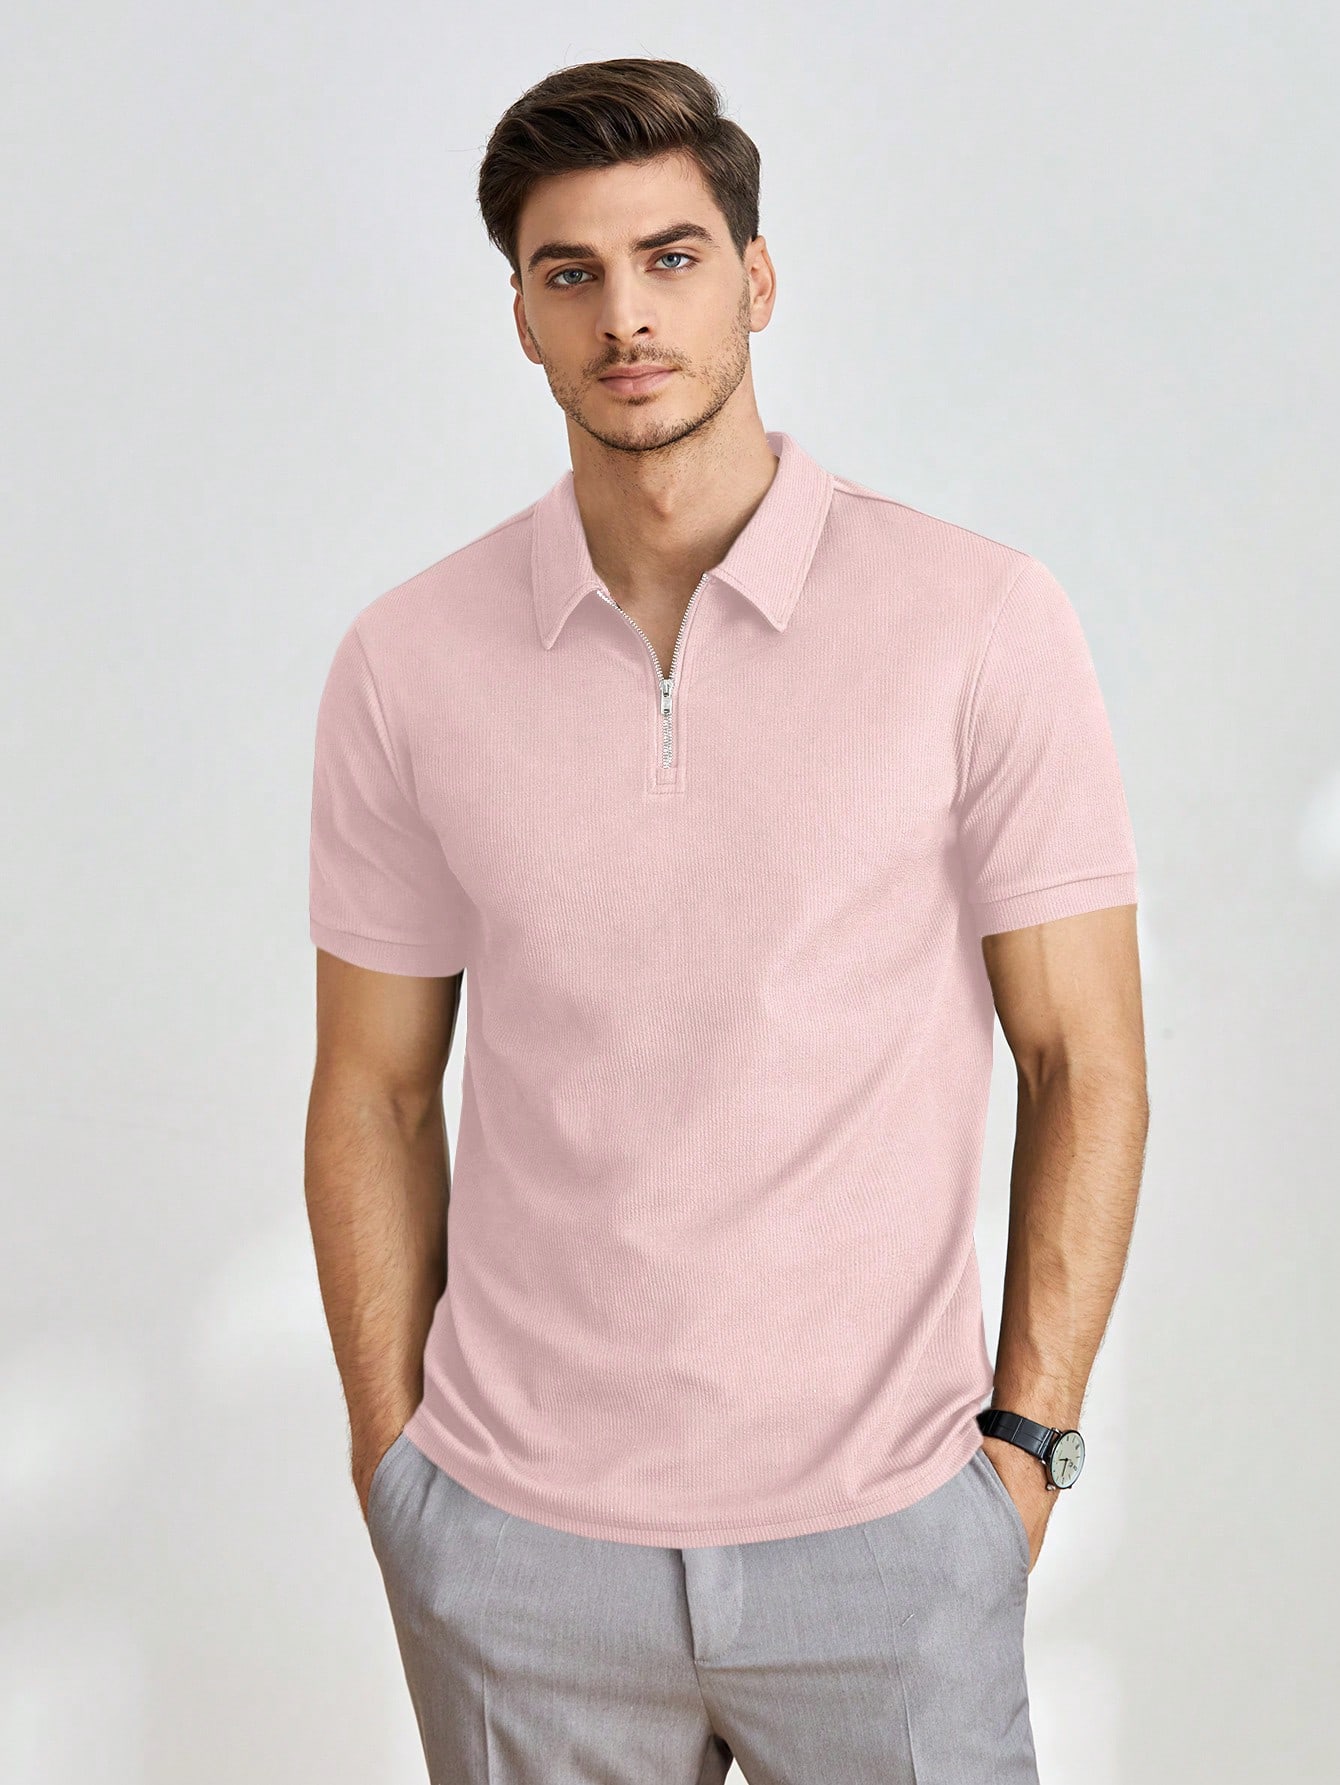 Мужская однотонная рубашка-поло с короткими рукавами Manfinity Homme, розовый